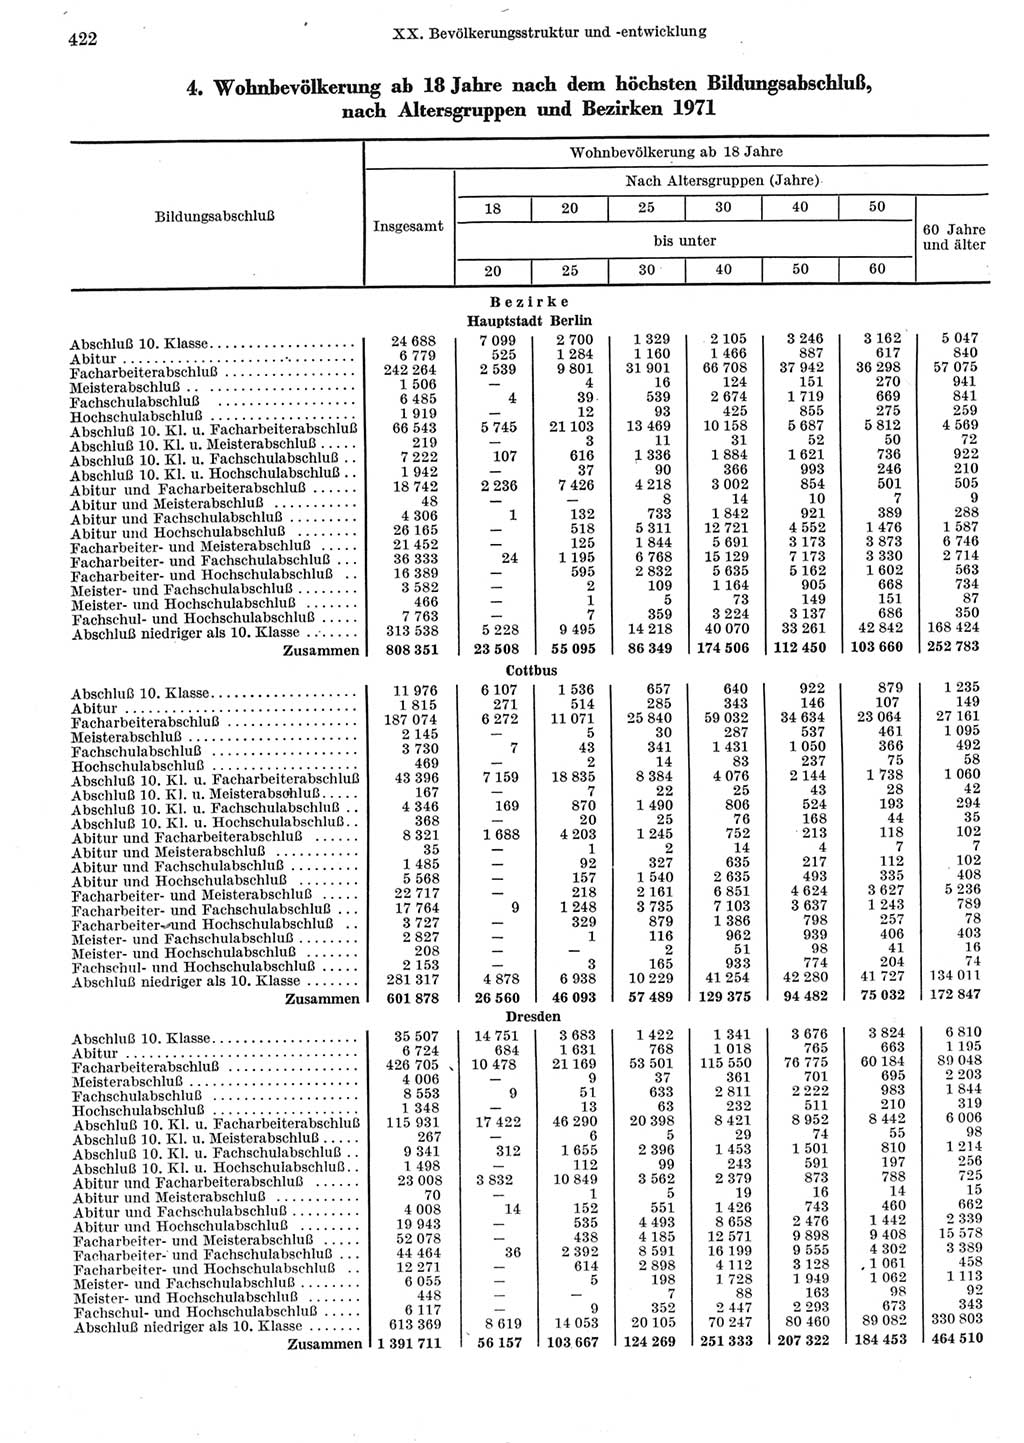 Statistisches Jahrbuch der Deutschen Demokratischen Republik (DDR) 1973, Seite 422 (Stat. Jb. DDR 1973, S. 422)